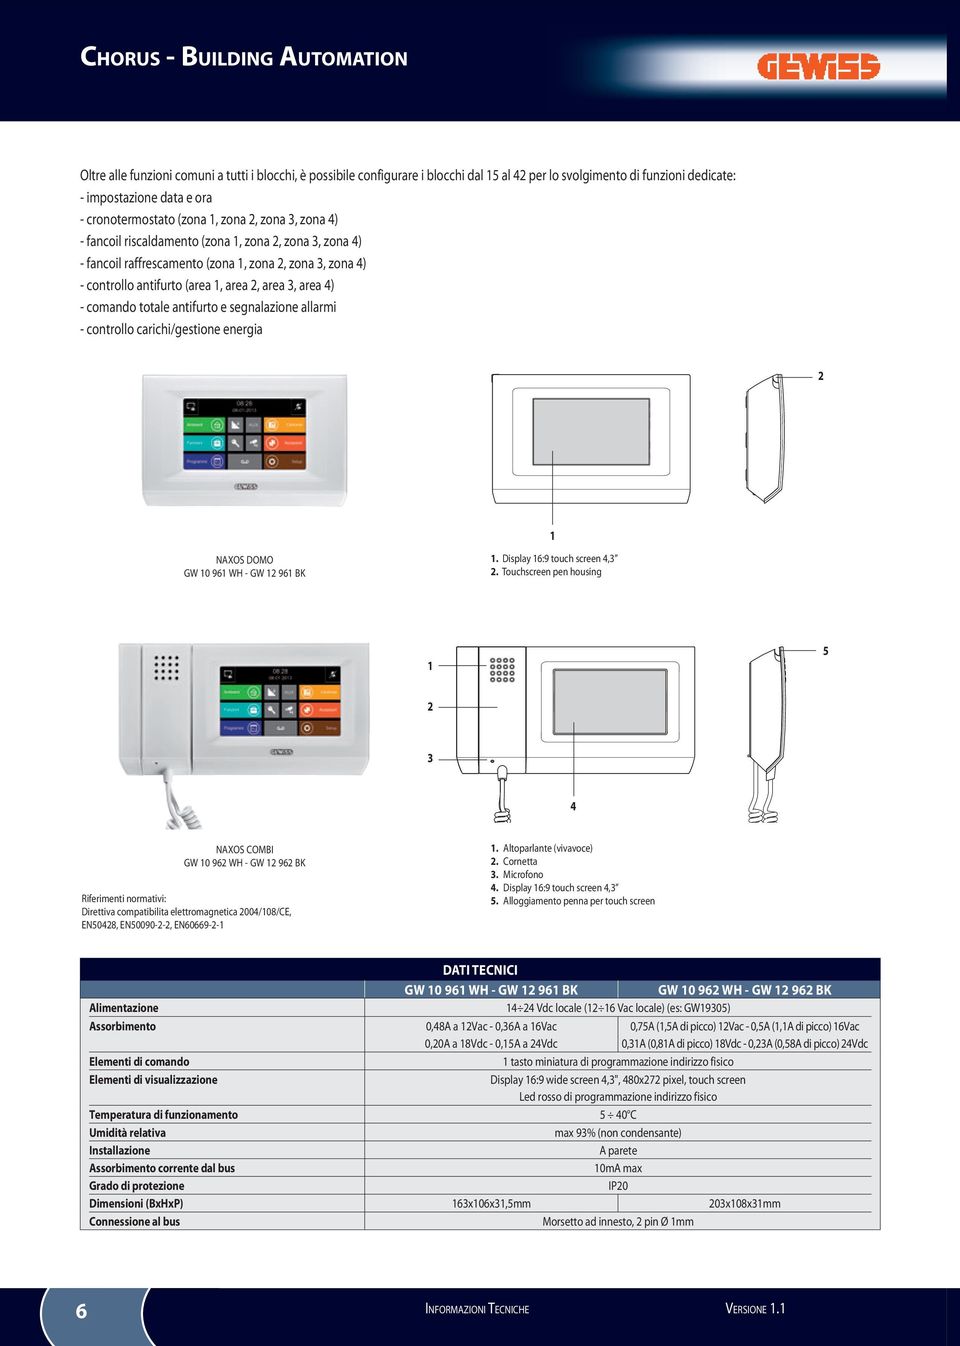 segnalazione allarmi - controllo carichi/gestione energia 2 NAXOS DOMO GW 0 9 WH - GW 2 9 BK. Display :9 touch screen,3 2.